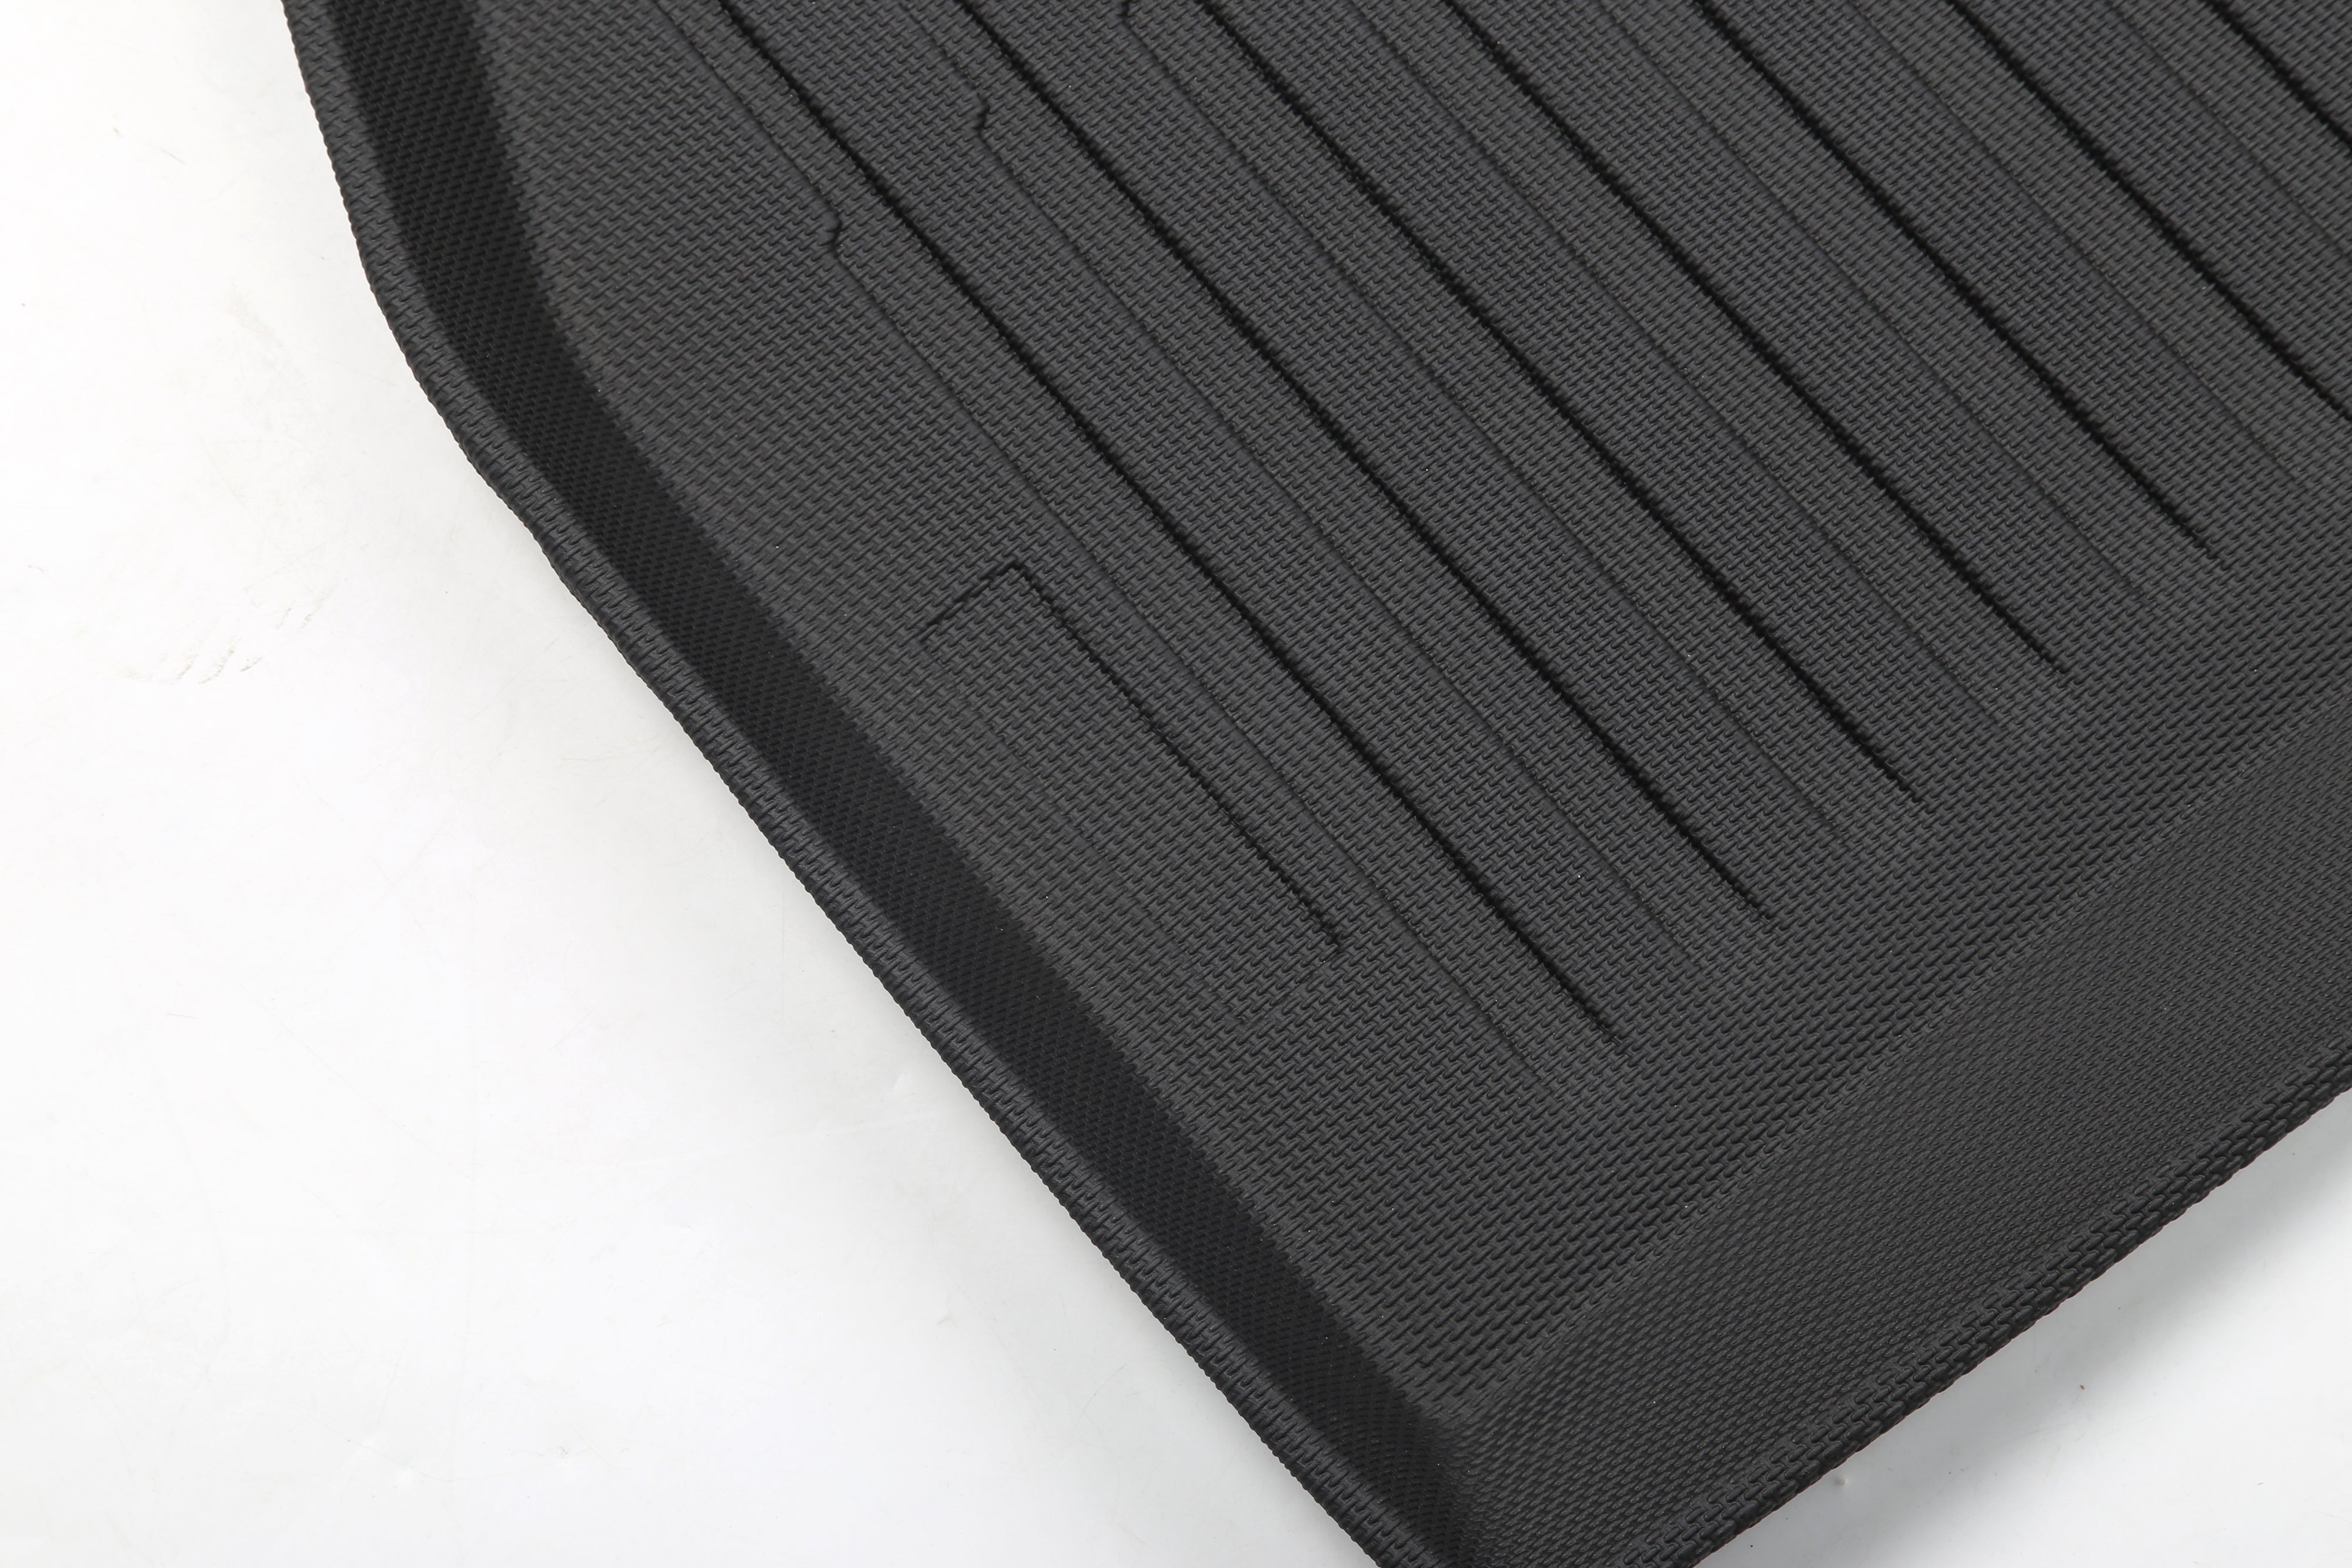 Model S Plaid rubber mats 5-piece complete set floor mats, frunk and trunk